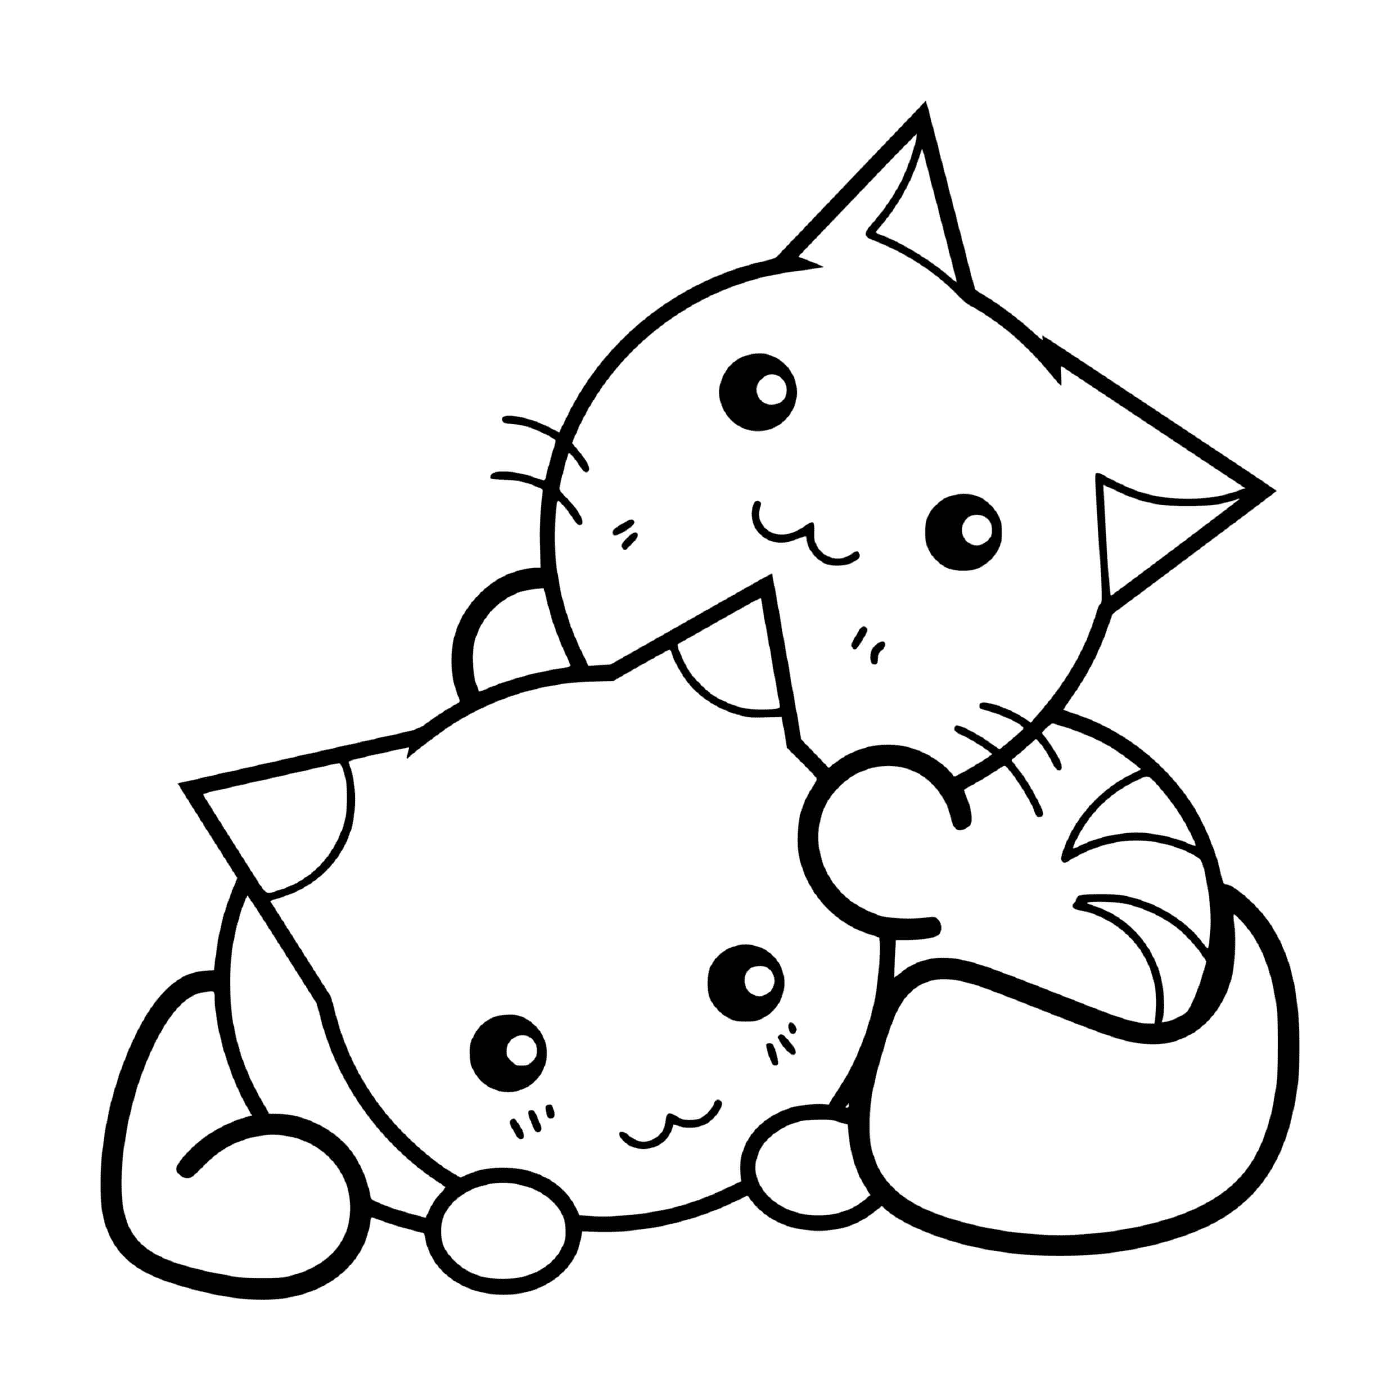  Um gato bonito e gatinho que se abraçam 